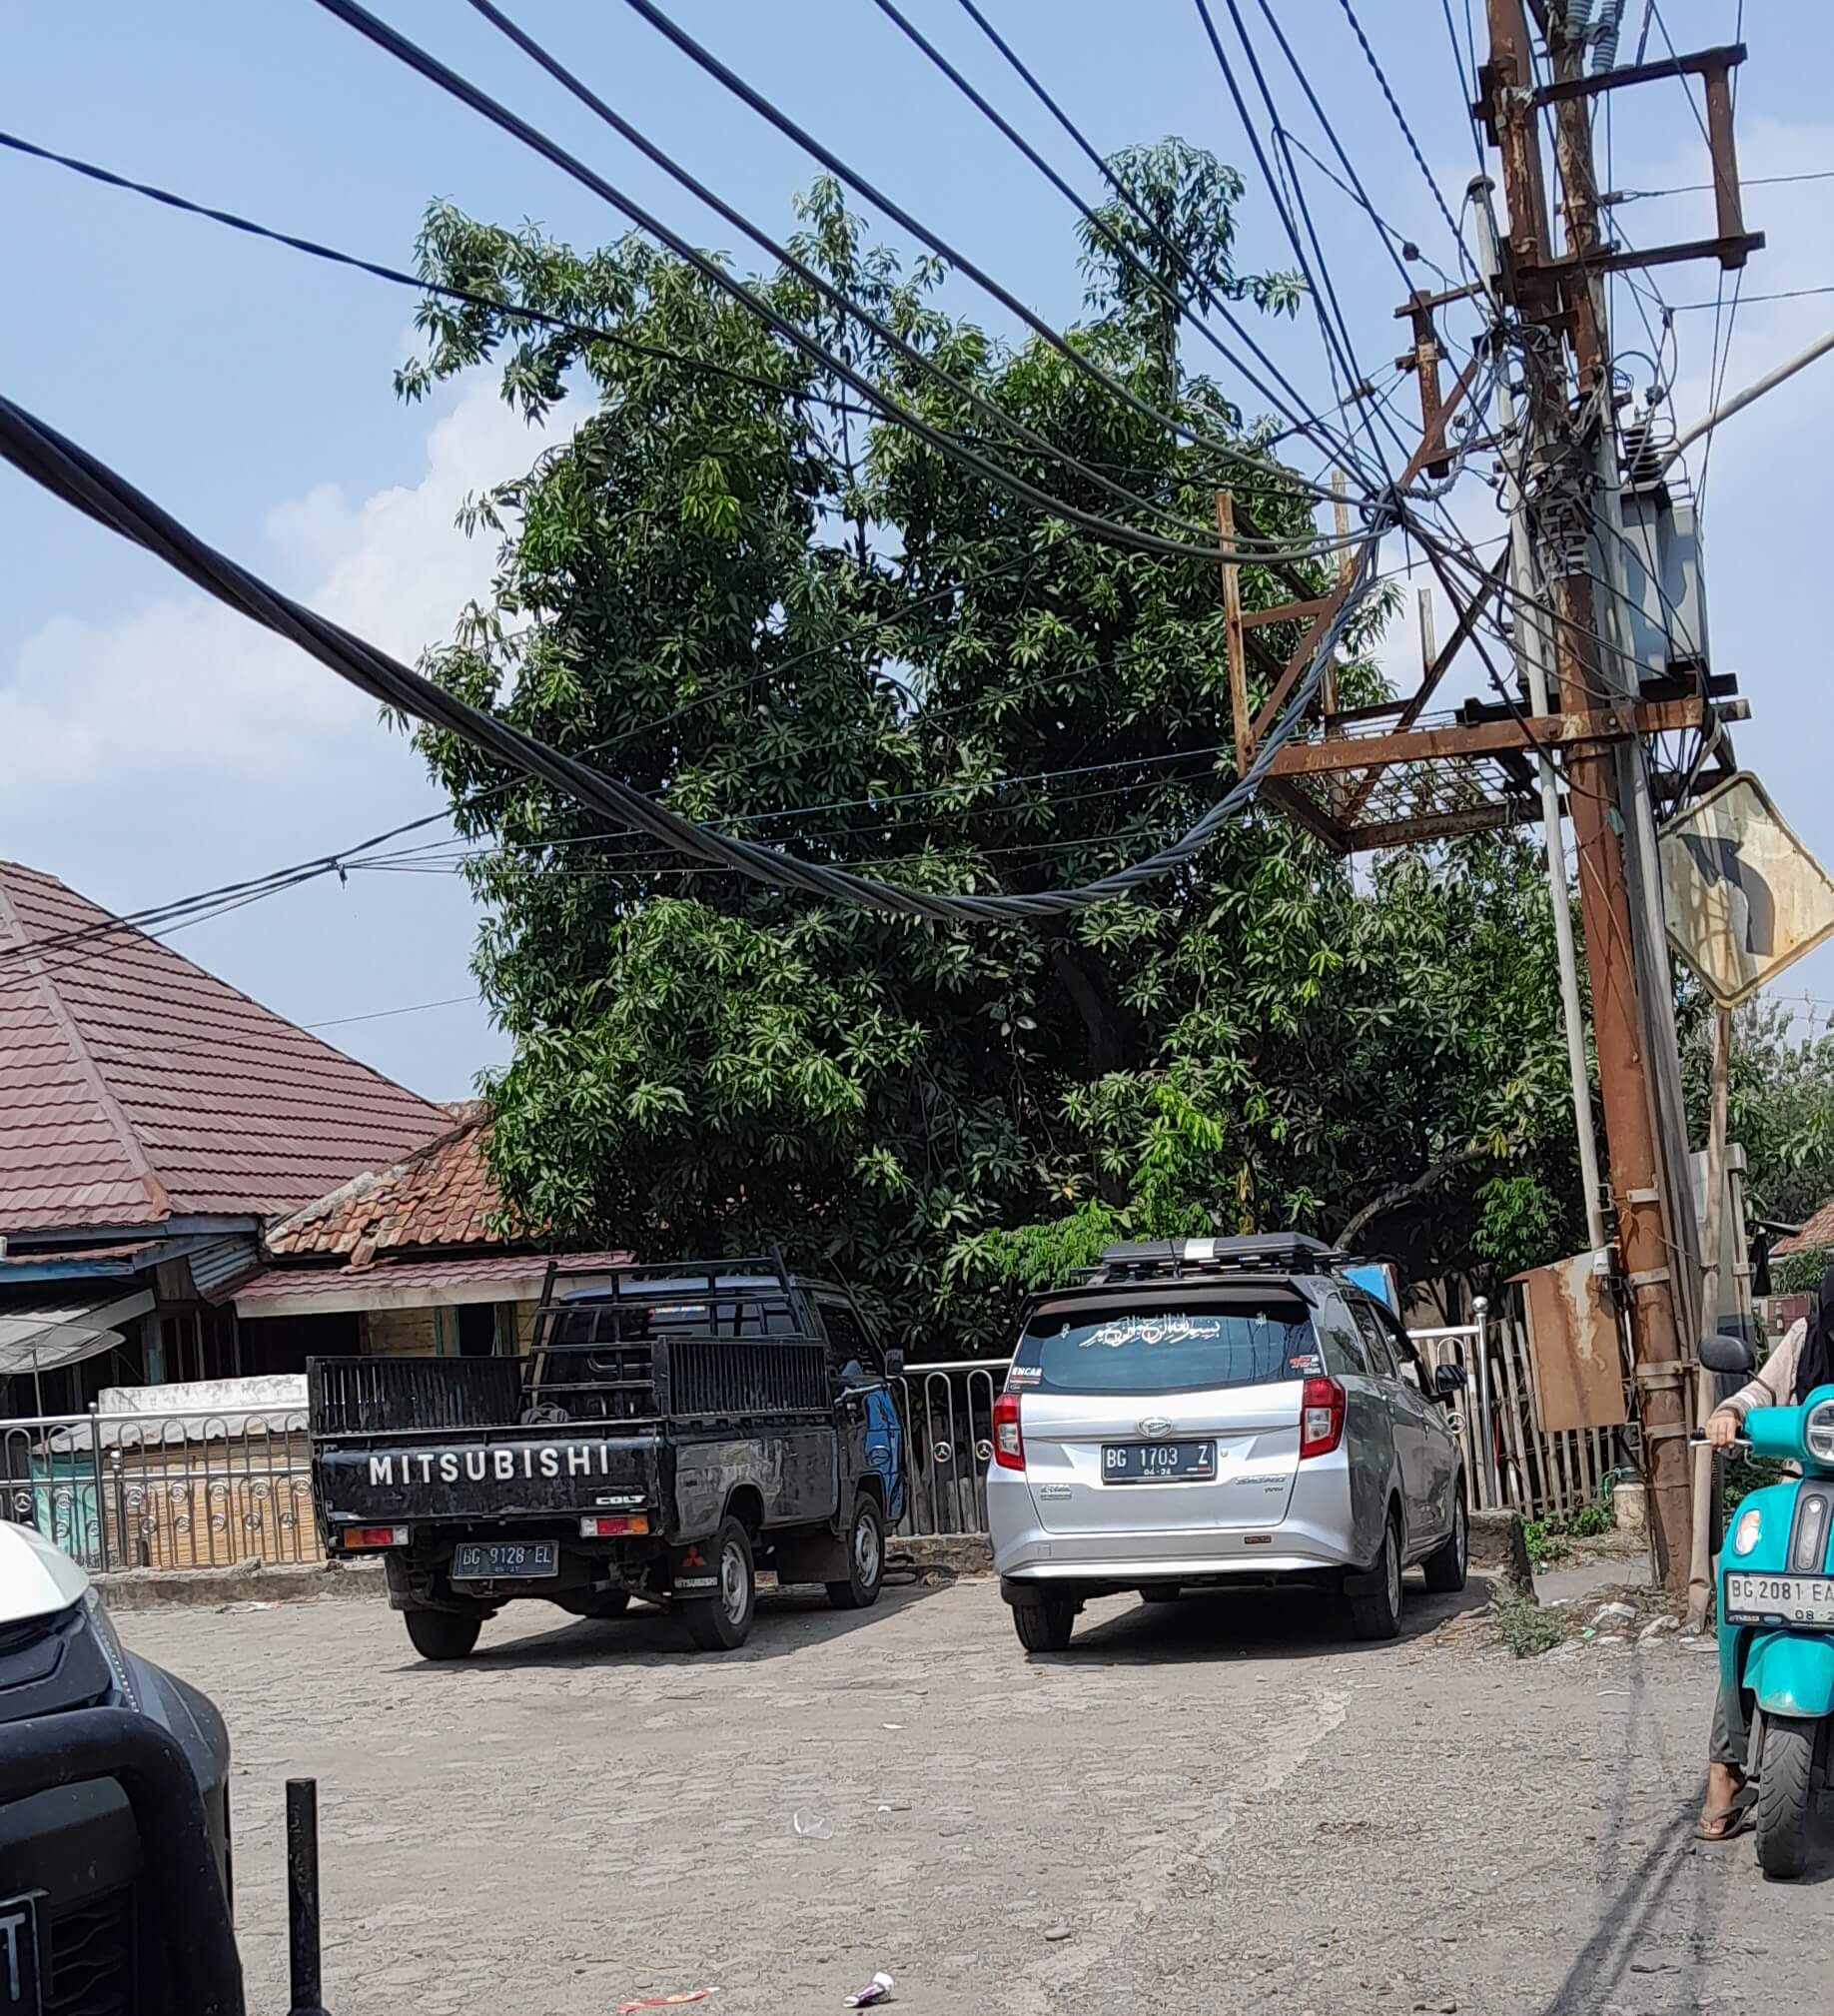 Hati-Hati Ya Jika Lewat, Ada Kabel Listrik Terjuntai Cukup Rendah di Pinggir Jalan Lintas Sumatera